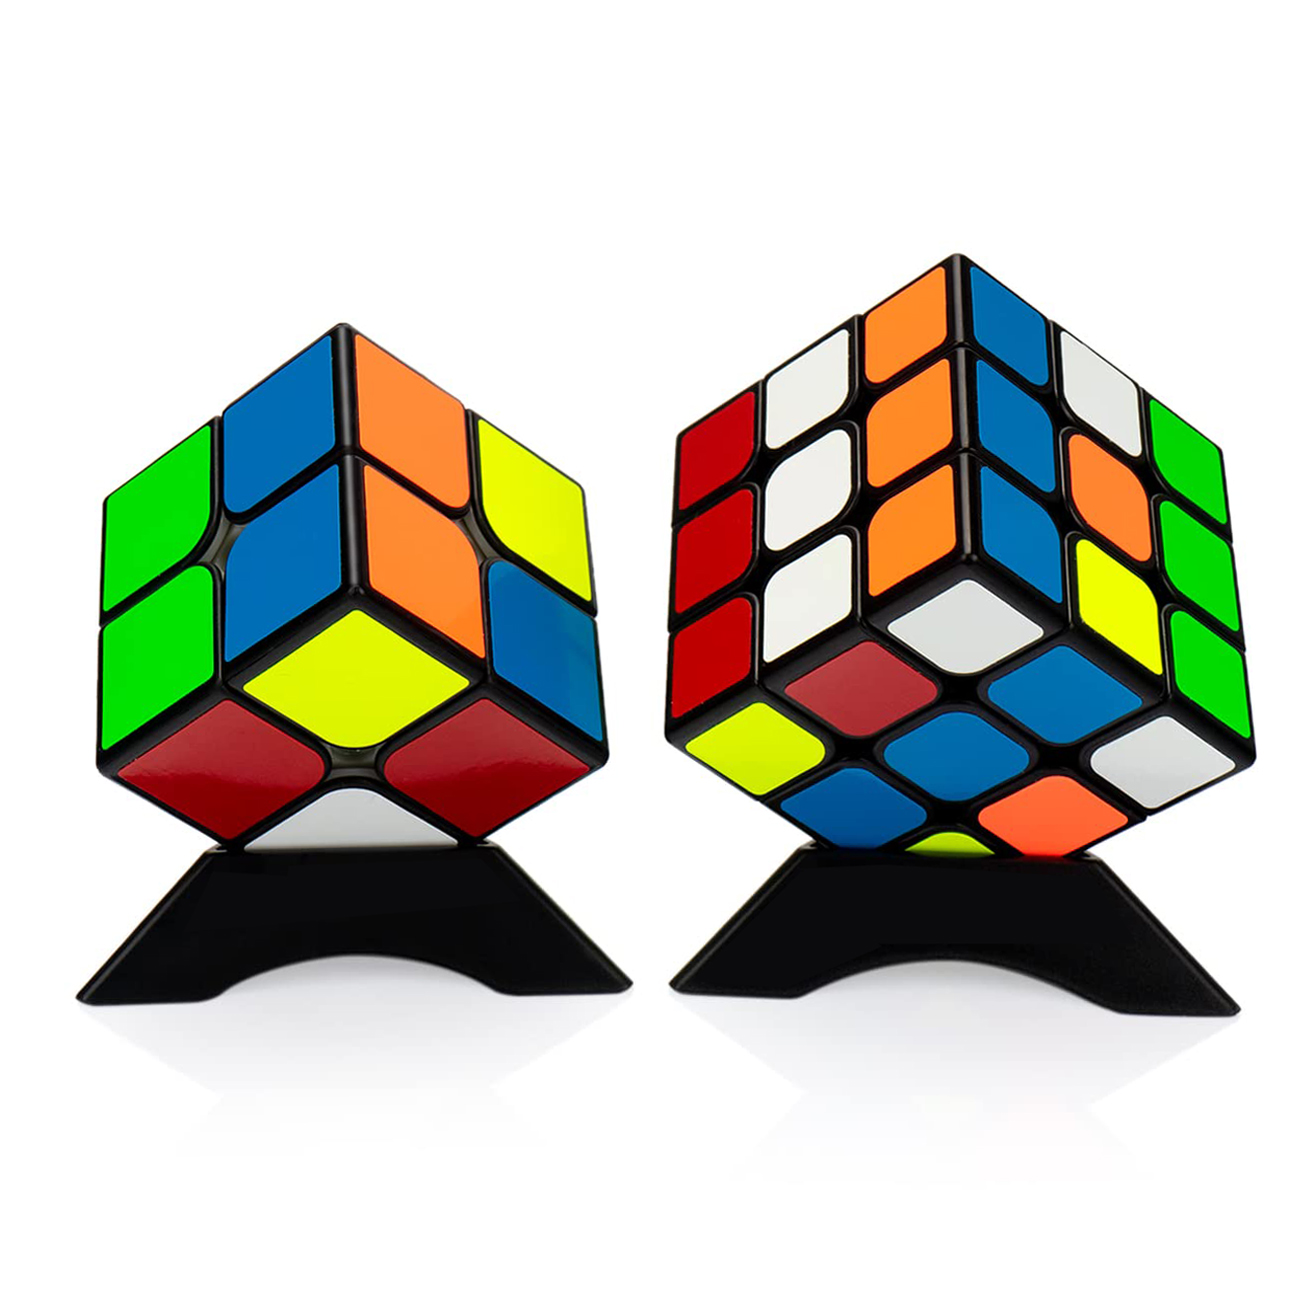 ルービックキューブ  マジックキューブ 公式版 2×2、3×3 魔方 プロ向け 回転スムーズ 安定感 知育玩具 Magic Cube (2個セット) ブラック